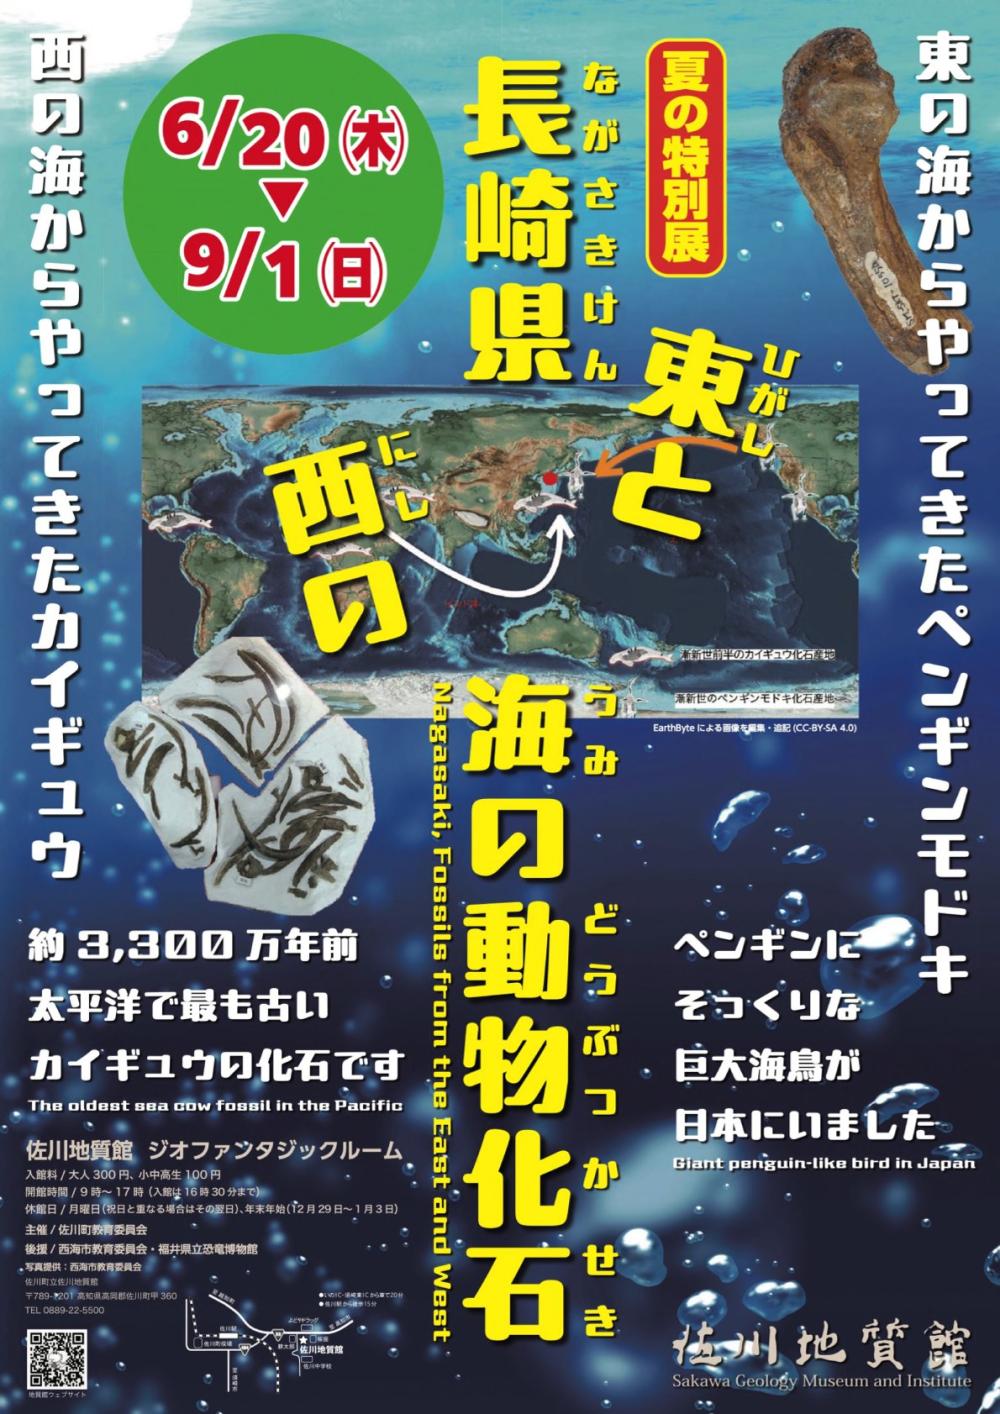 夏の特別展「長崎県 東と西の海の動物化石」